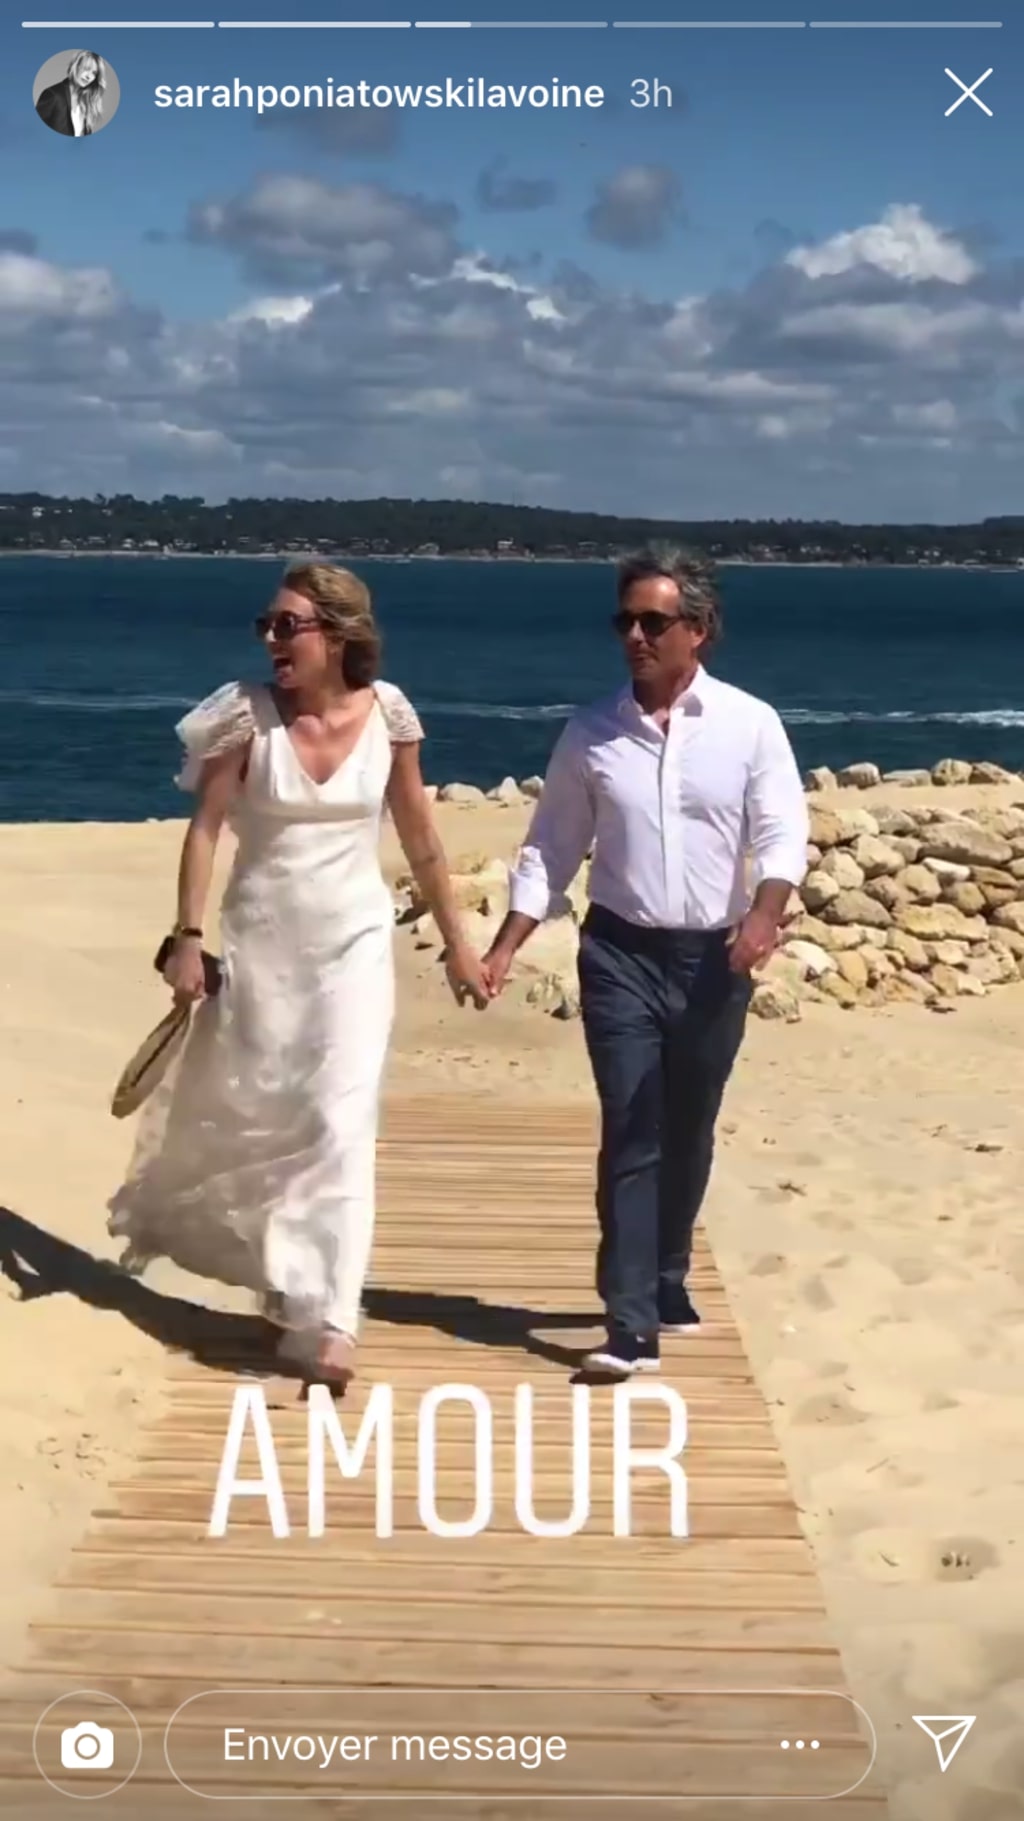 Mariage de Laura Smet et Raphaël Lancrey-Javal : découvrez tous les clichés de la cérémonie